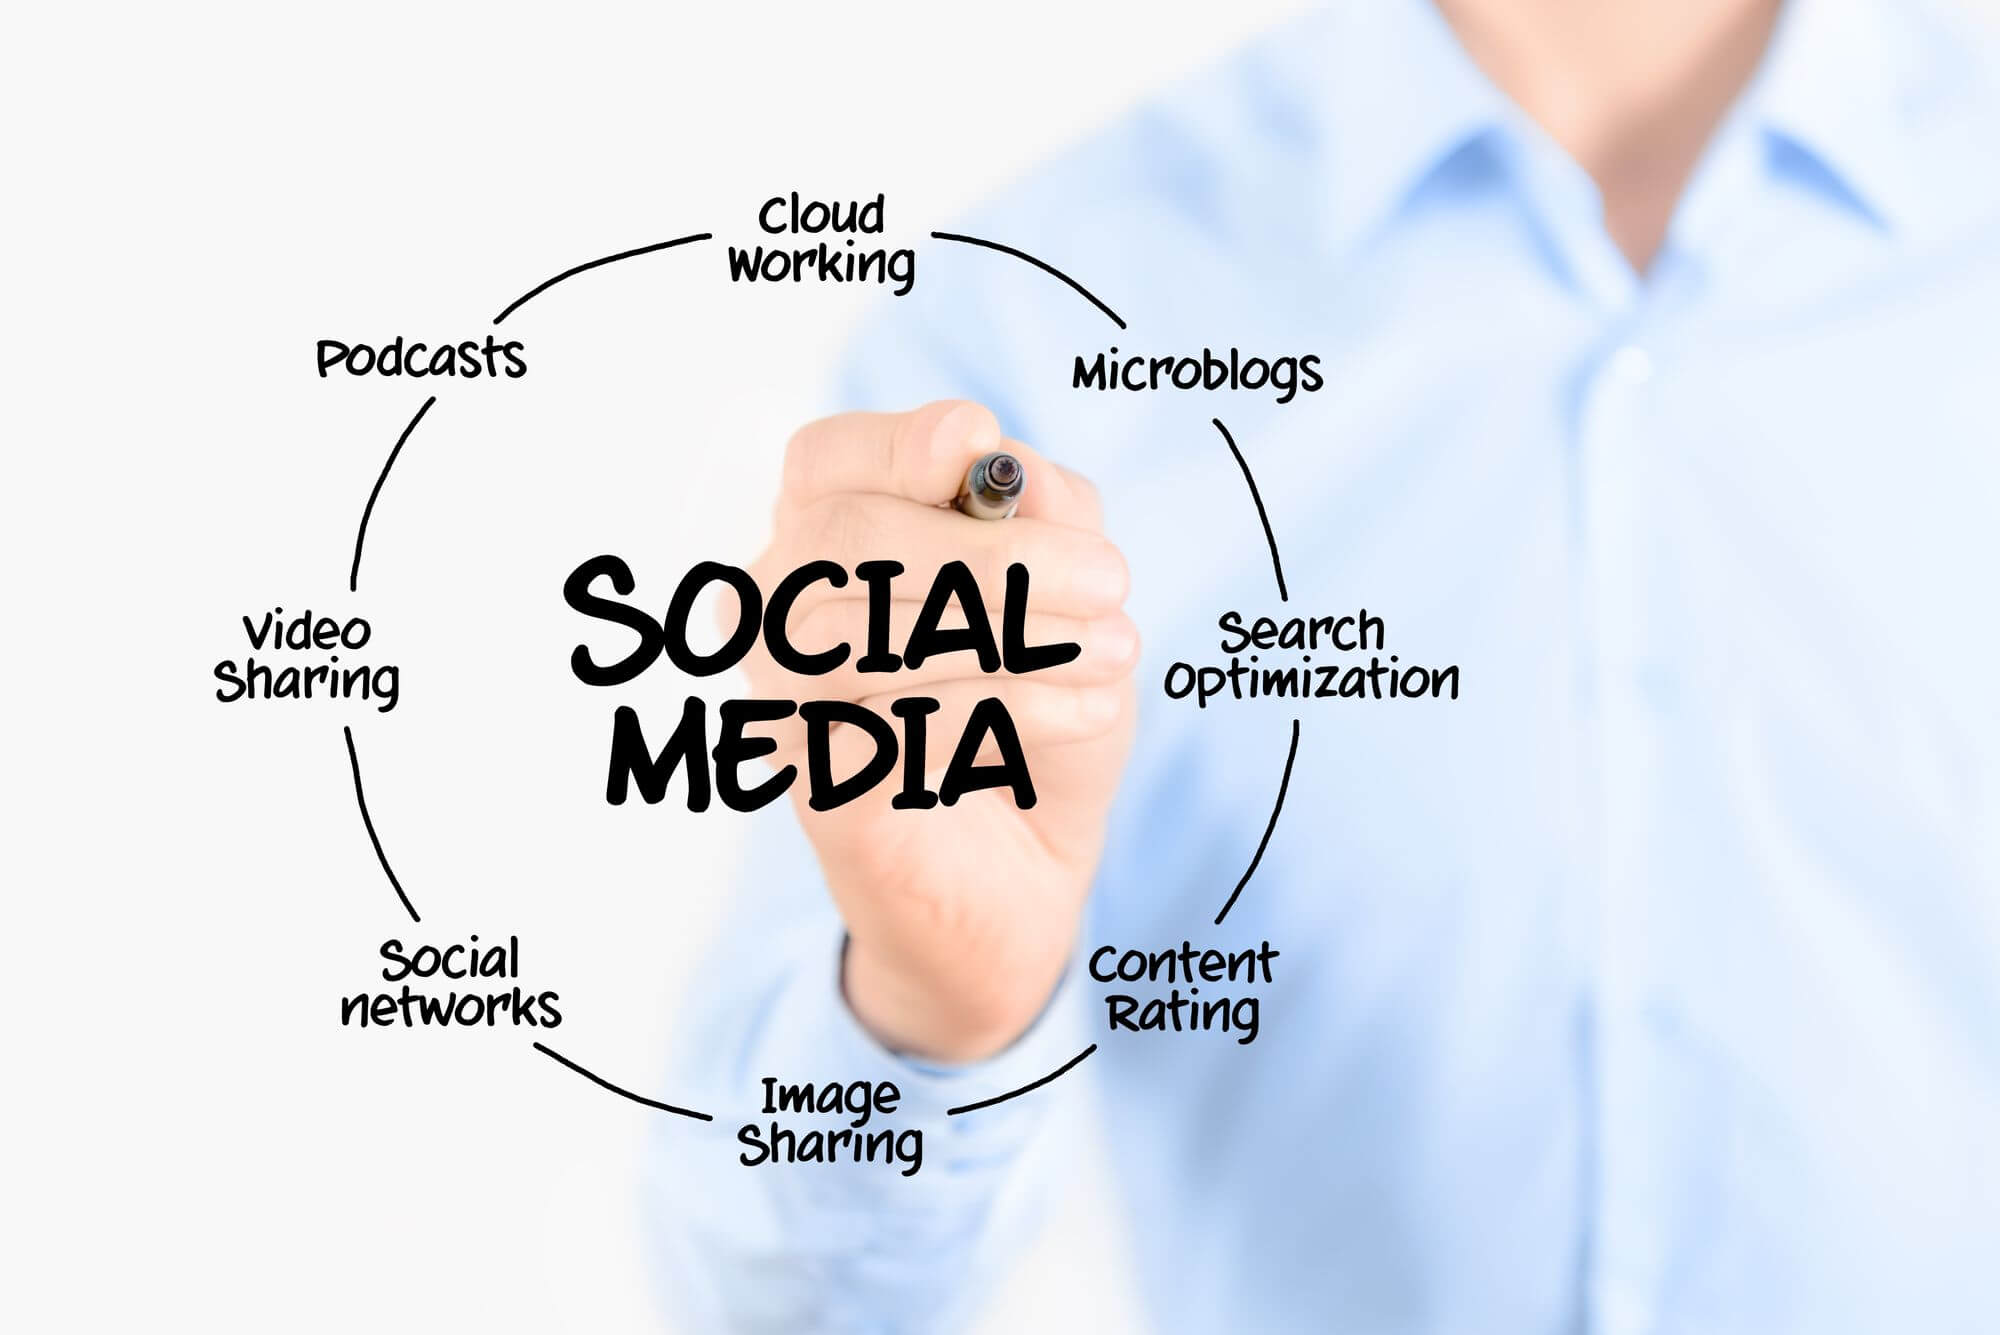 利用社交媒体：社交媒体在厦门是一个强大的营销工具。通过在社交媒体平台上推广您的网站内容，您可以接触到更多的潜在客户并增加流量。